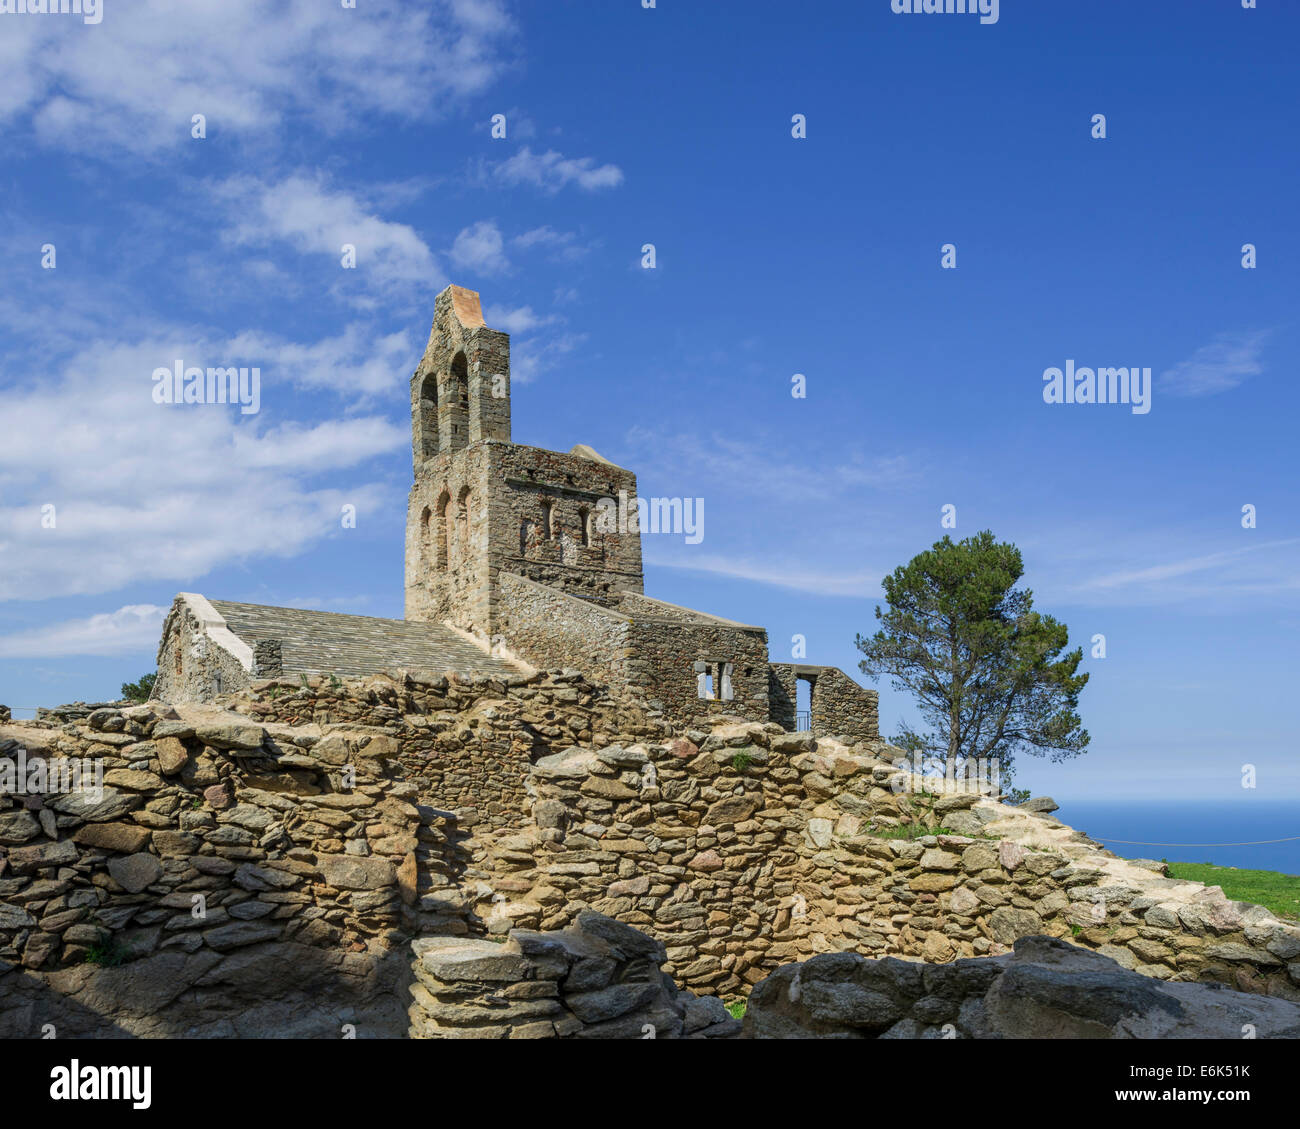 L'église romane de Santa Helena de Rodes, près de El Port de la selva, parc naturel du Cap de Creus, région catalogne, Espagne Banque D'Images